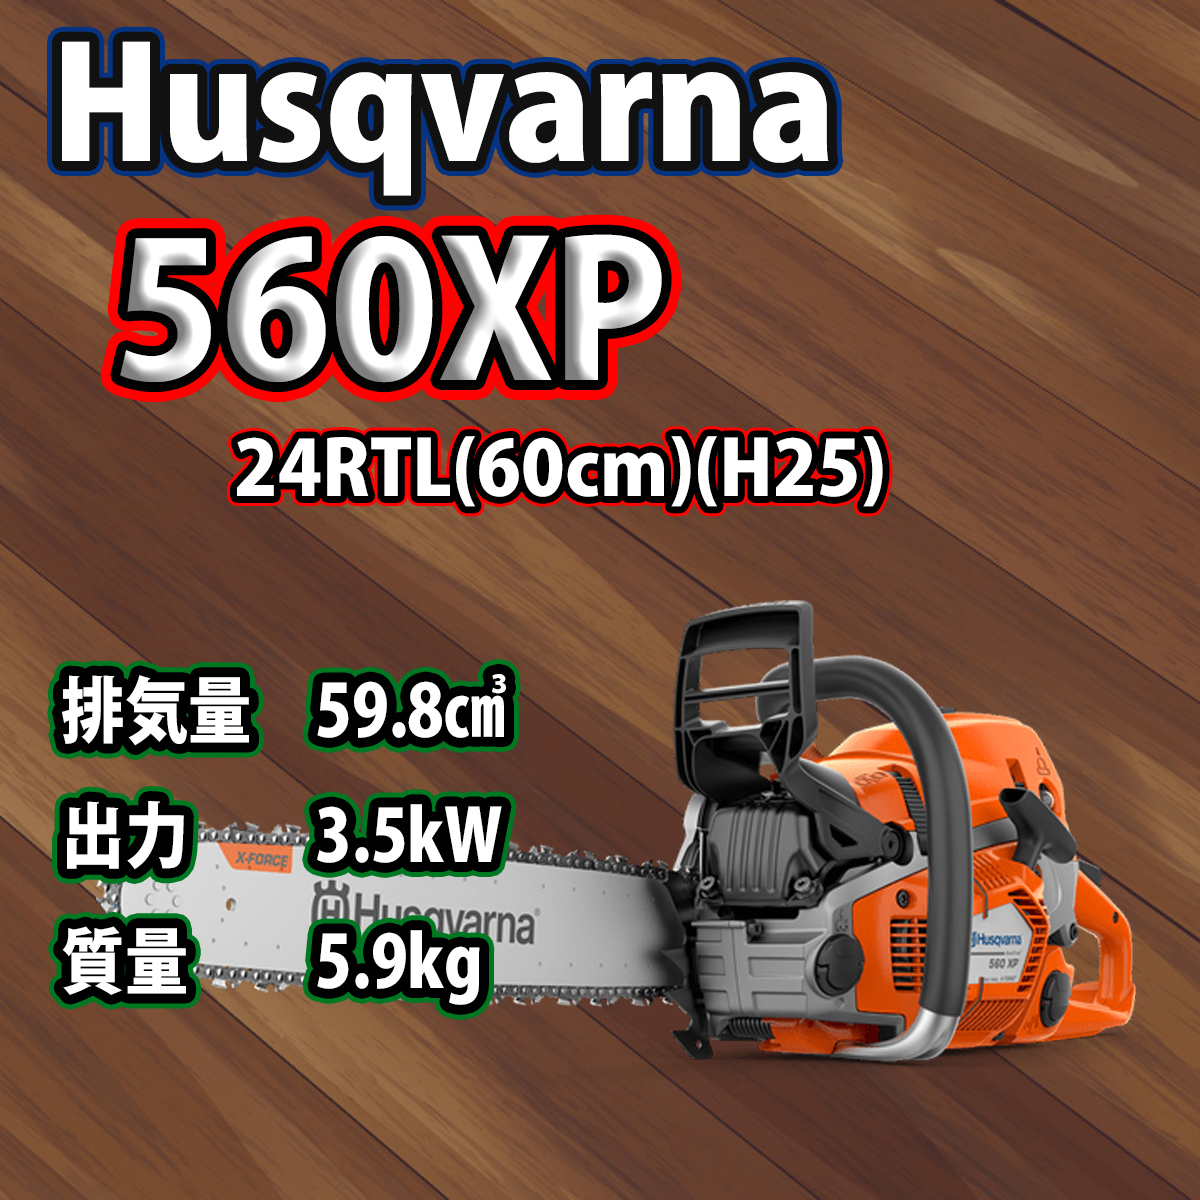 ハスクバーナチェンソー560XP-24RTL(60cm)(H25)/北海道、沖縄以外送料無料/国内正規品